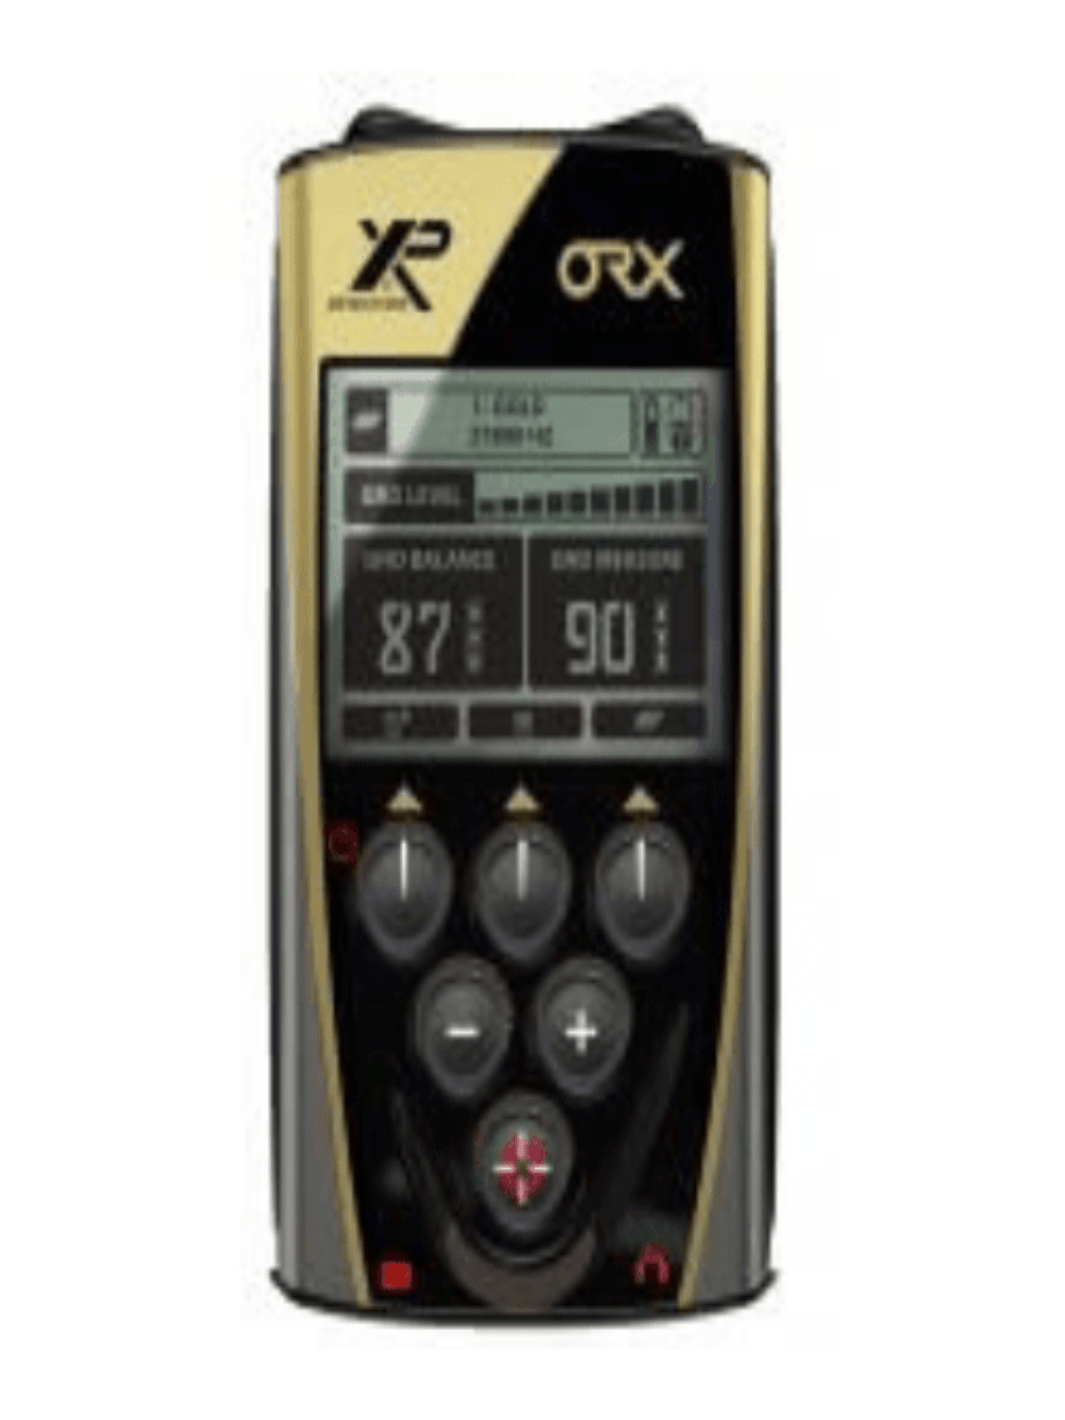 XP ORX Back-lit LCD Display Remote Control - Treasure Coast Metal Detectors